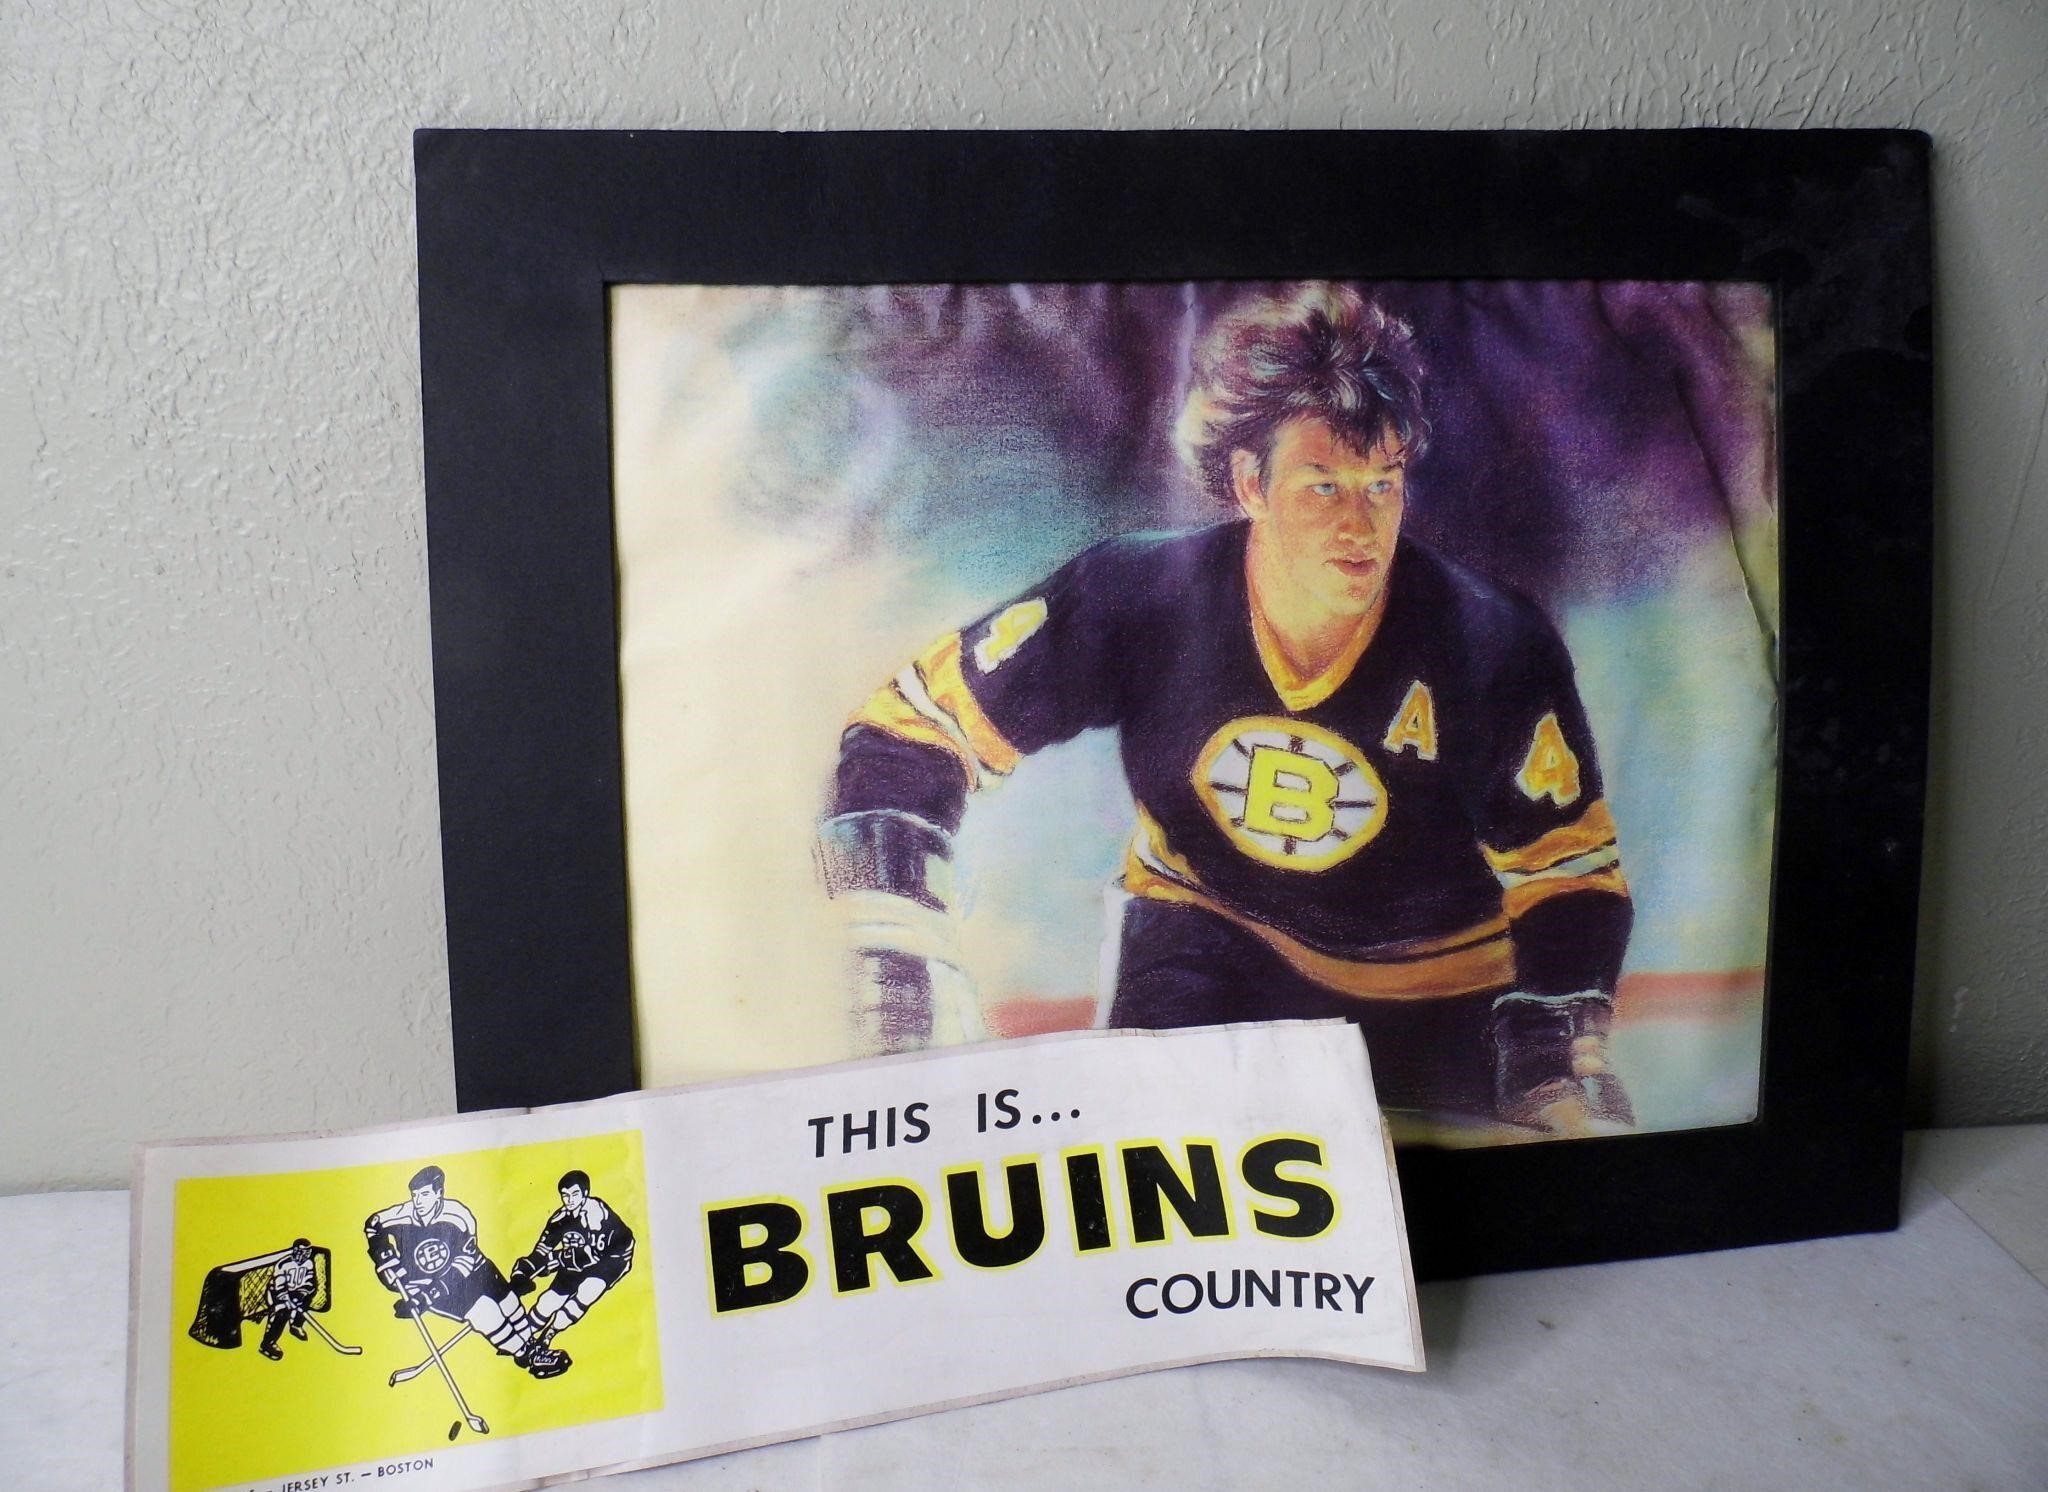 Bobby Orr Poster & Vintage Bruins Bumper Sticker